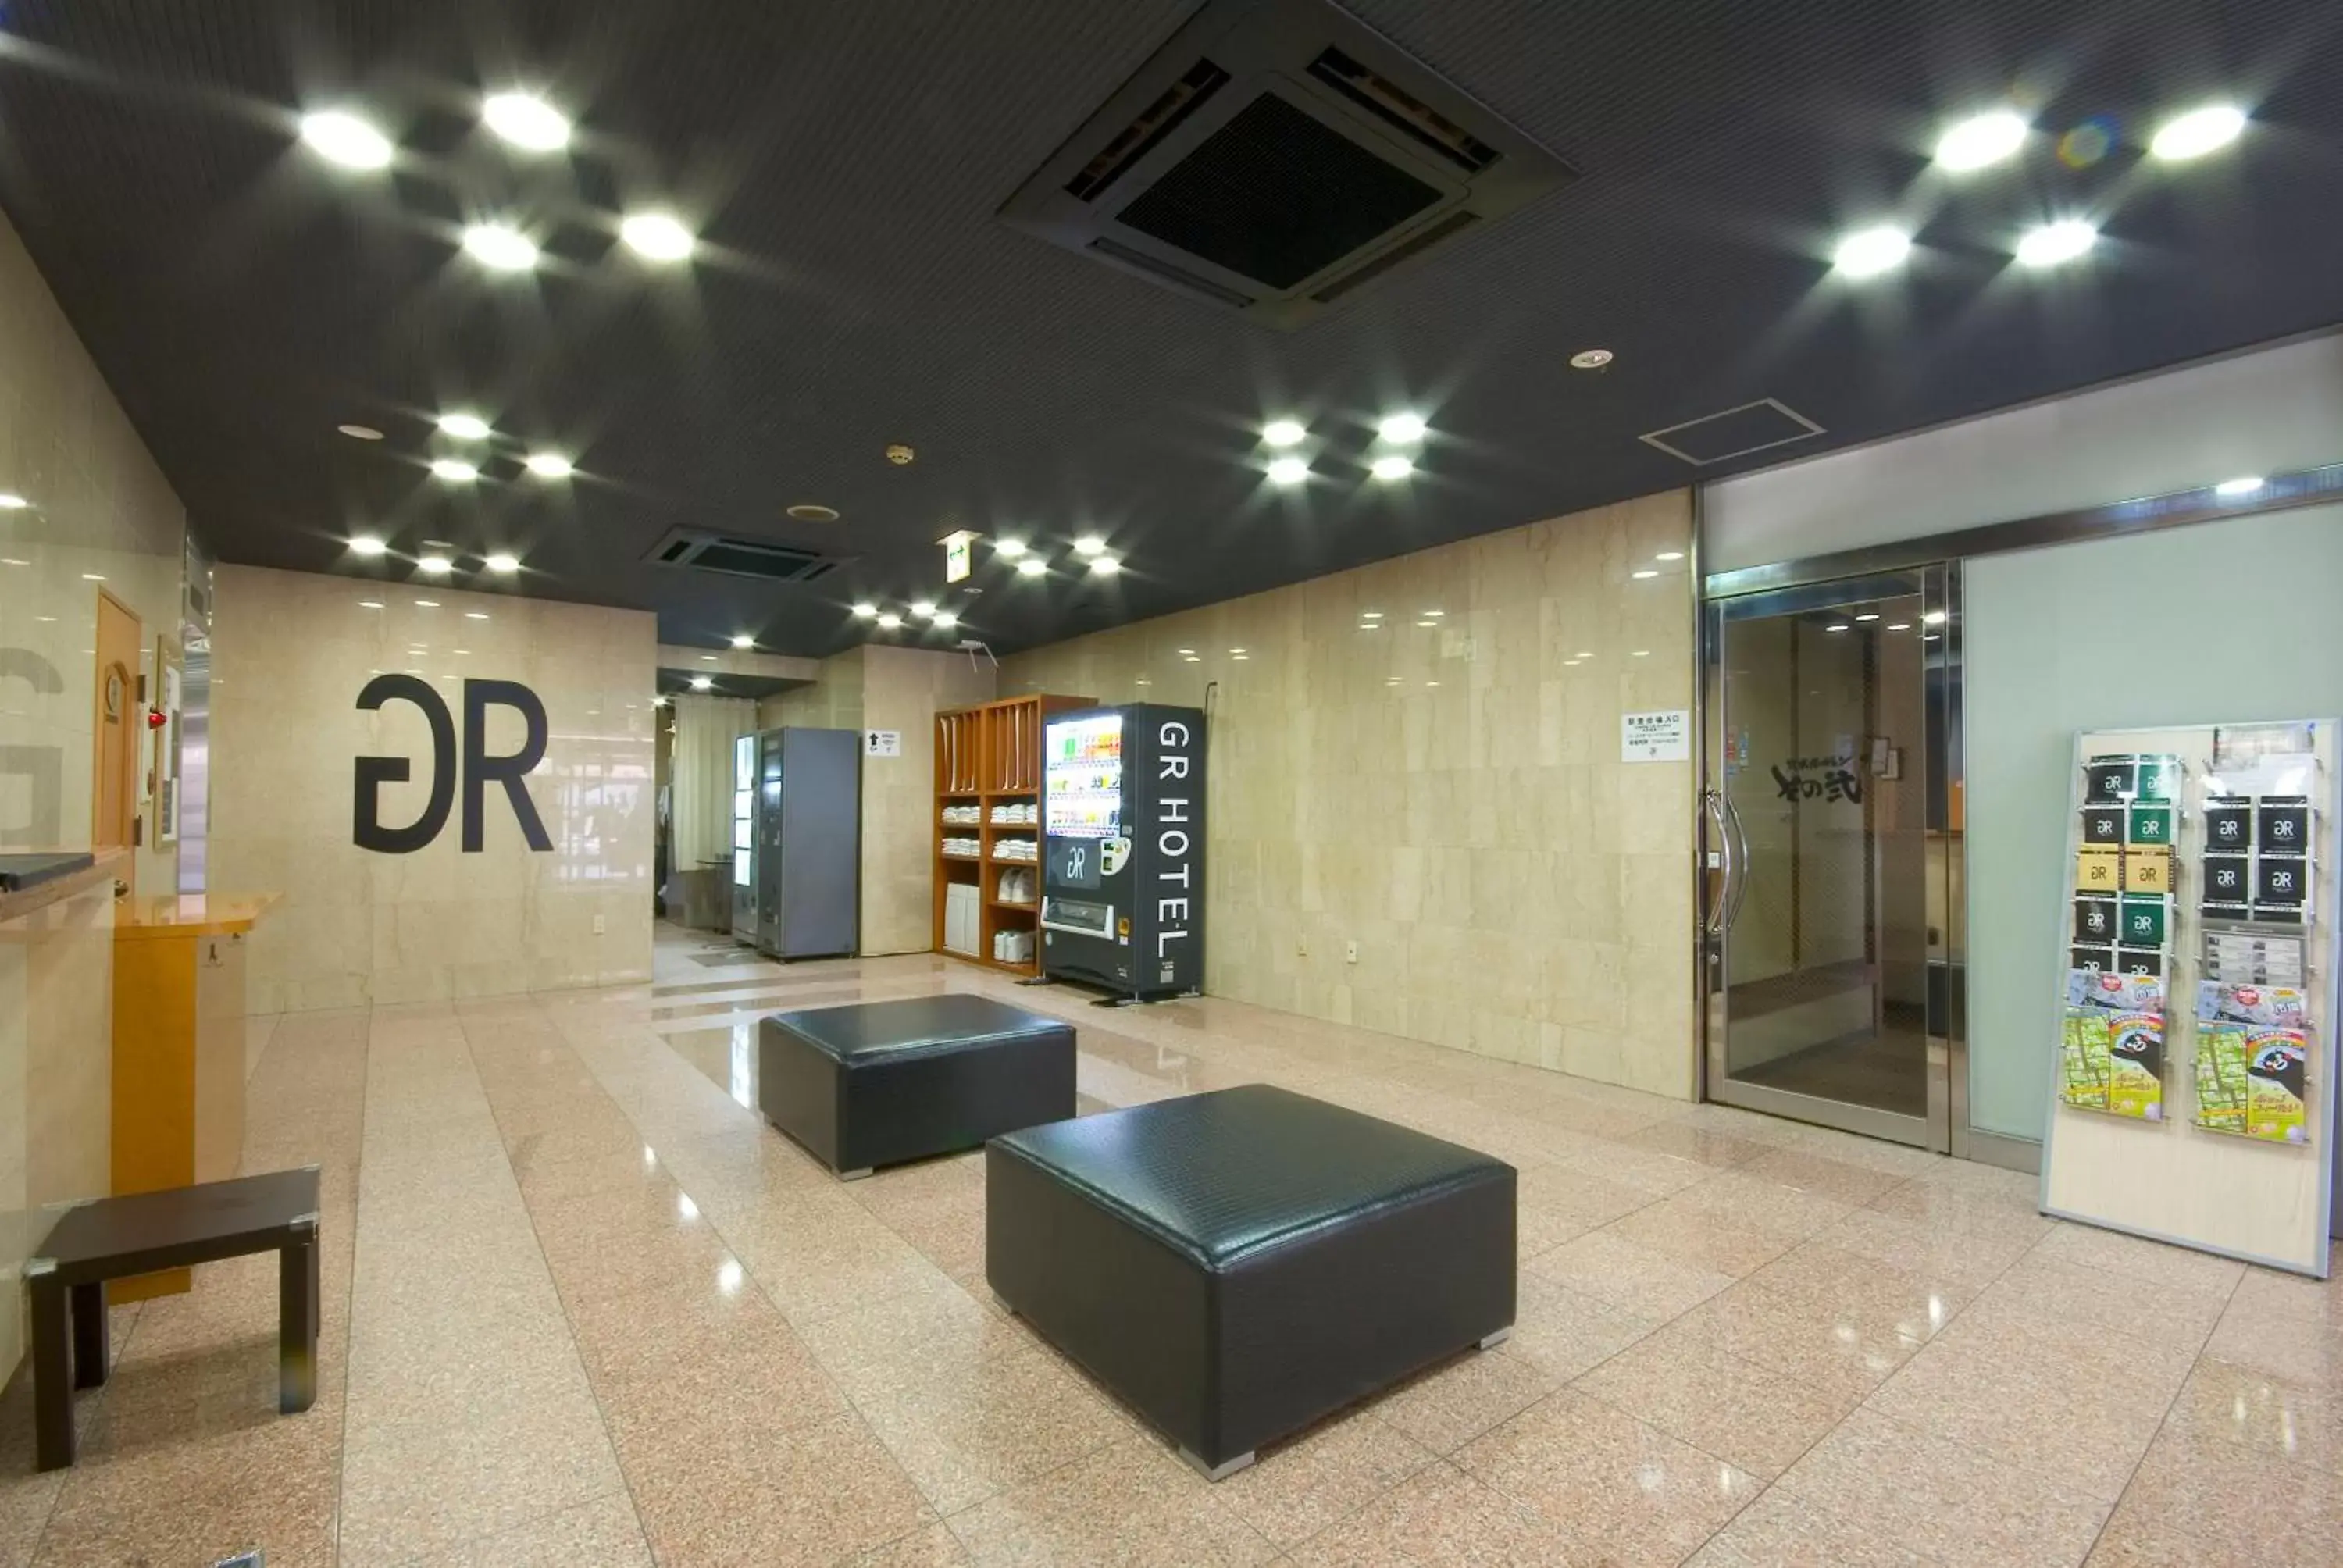 Lobby or reception, Lobby/Reception in GR Hotel Suidocho